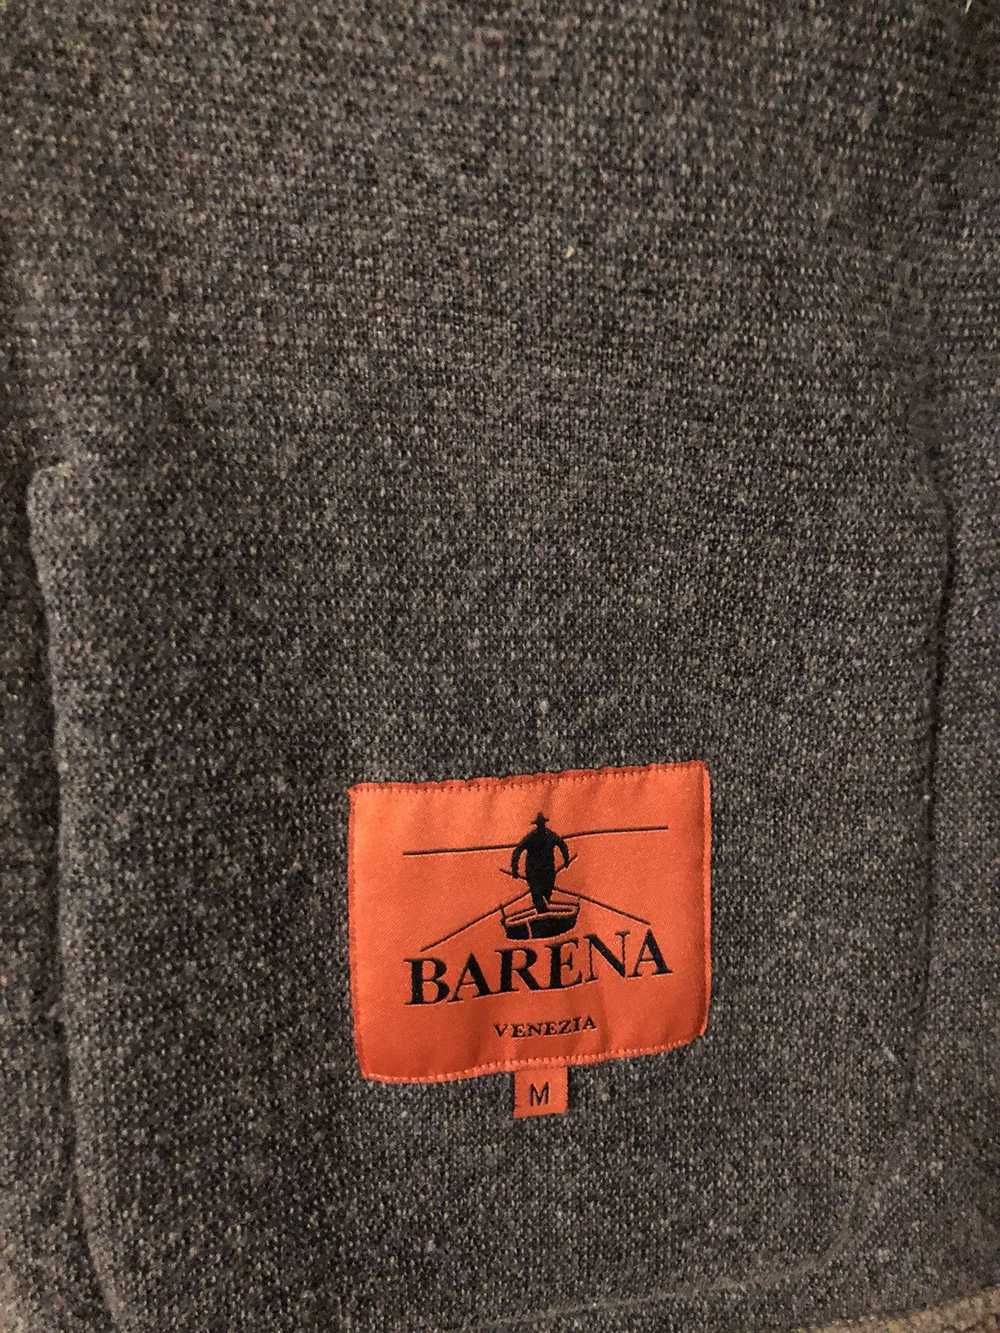 Barena × Barena Venezia × Loro Piana Barena wool … - image 3